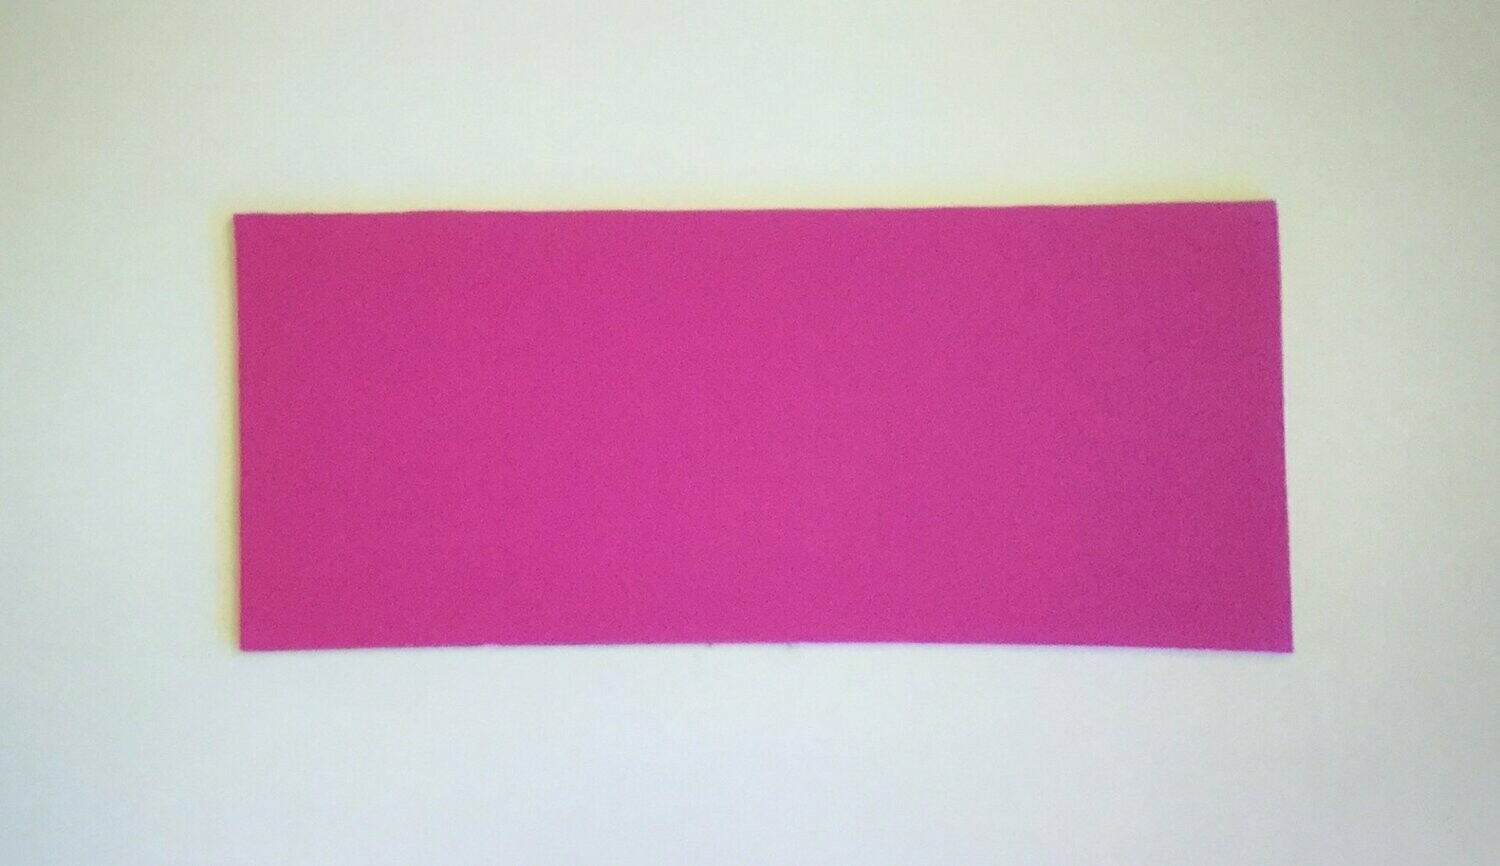 Wippentarget pink ca. 13 x 30 cm ohne Akustik, NEOPREN 2,5 mm
mit Gummizug